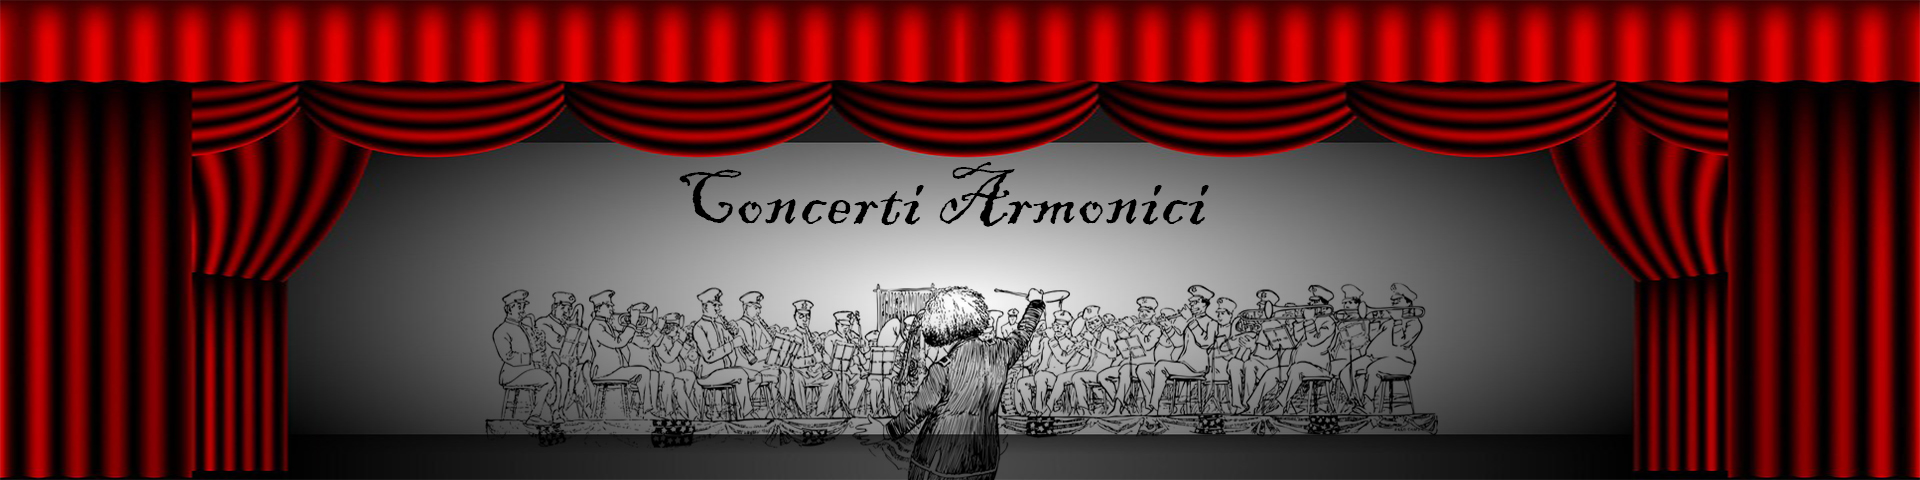 Concerti Armonici